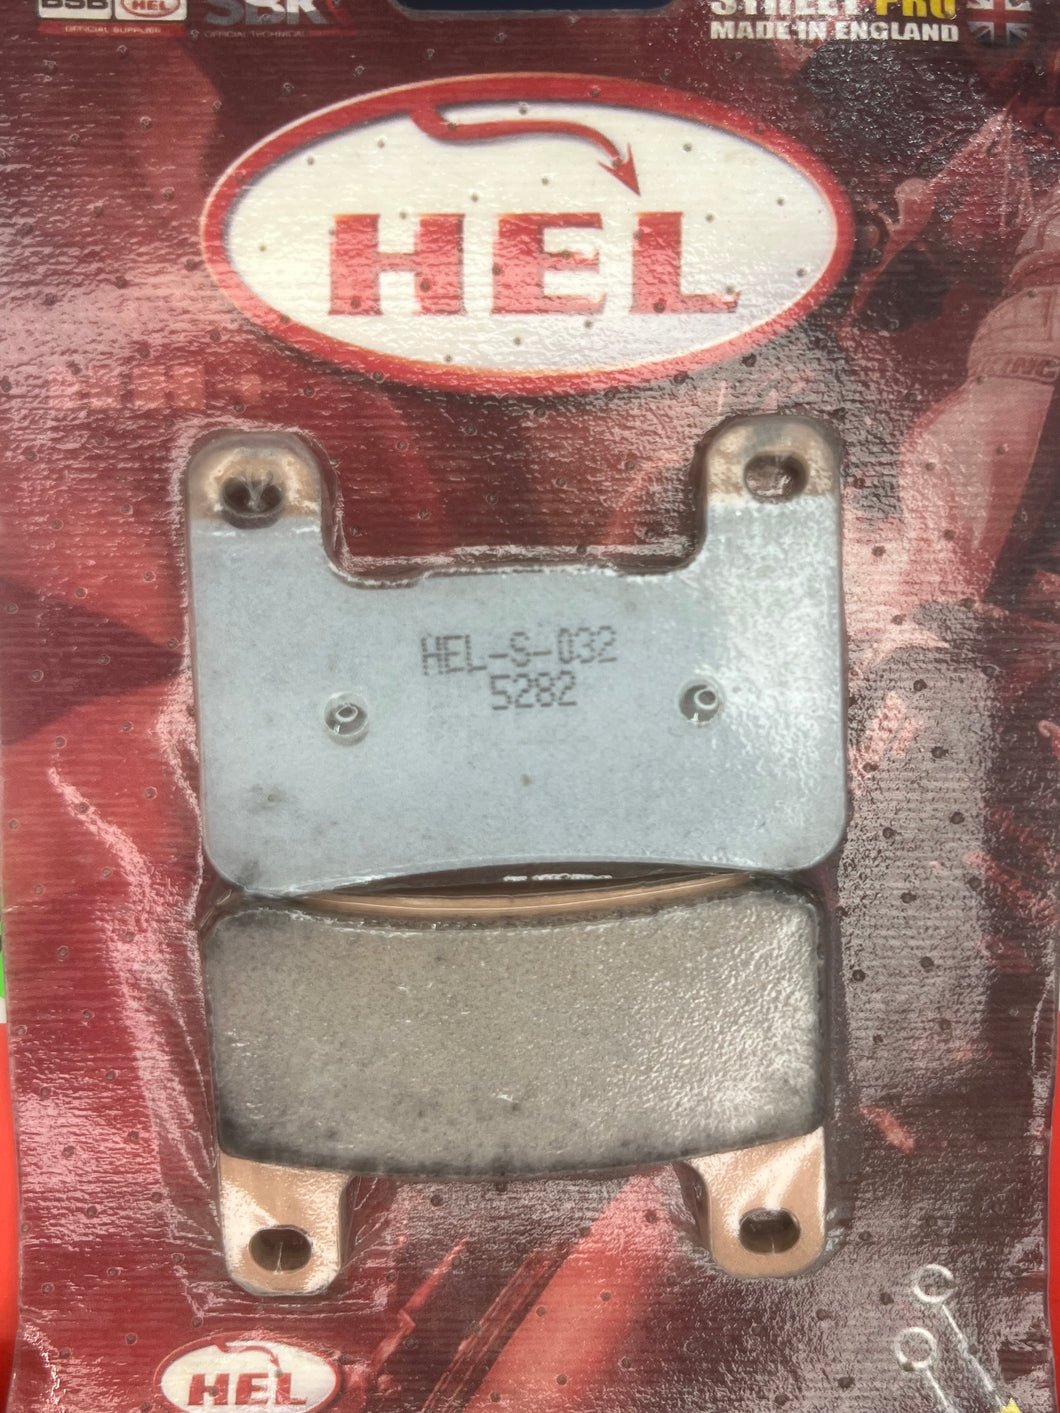 HEL-S-032 (Front)